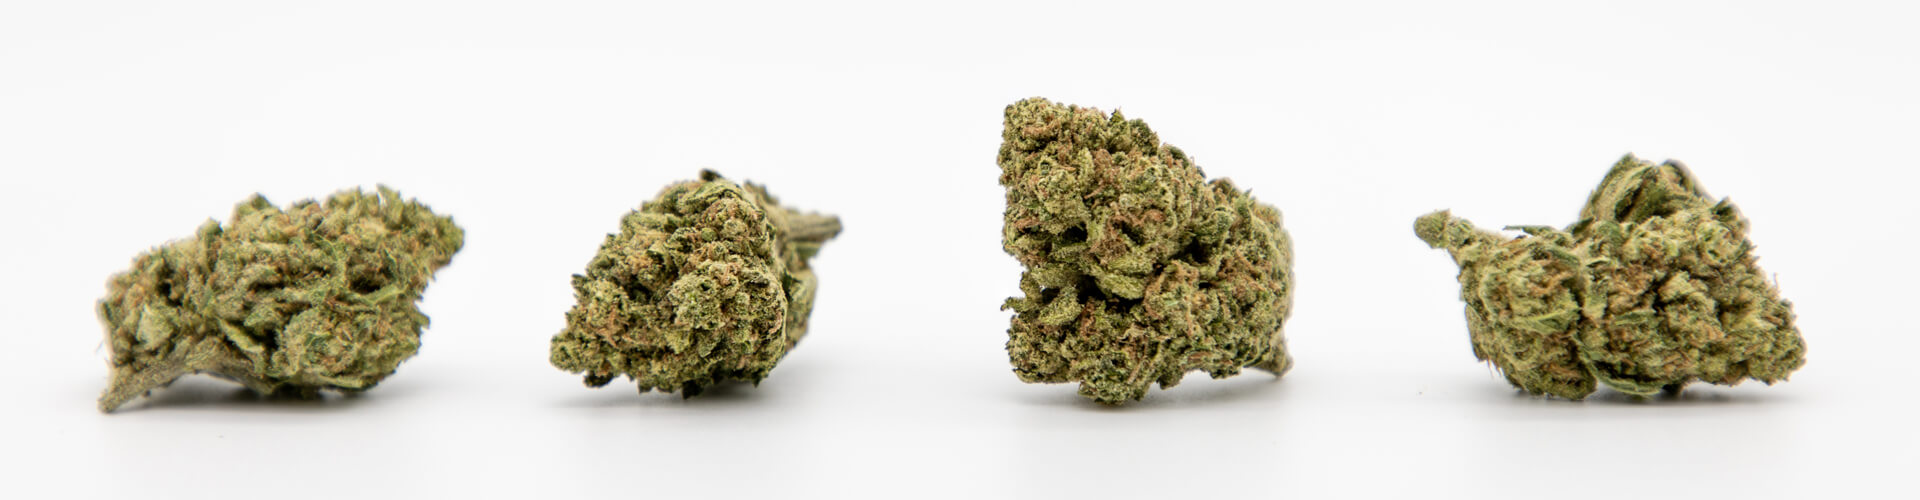 vier kleine Cannabis Blüten mit reichlich Trichomen besetzt